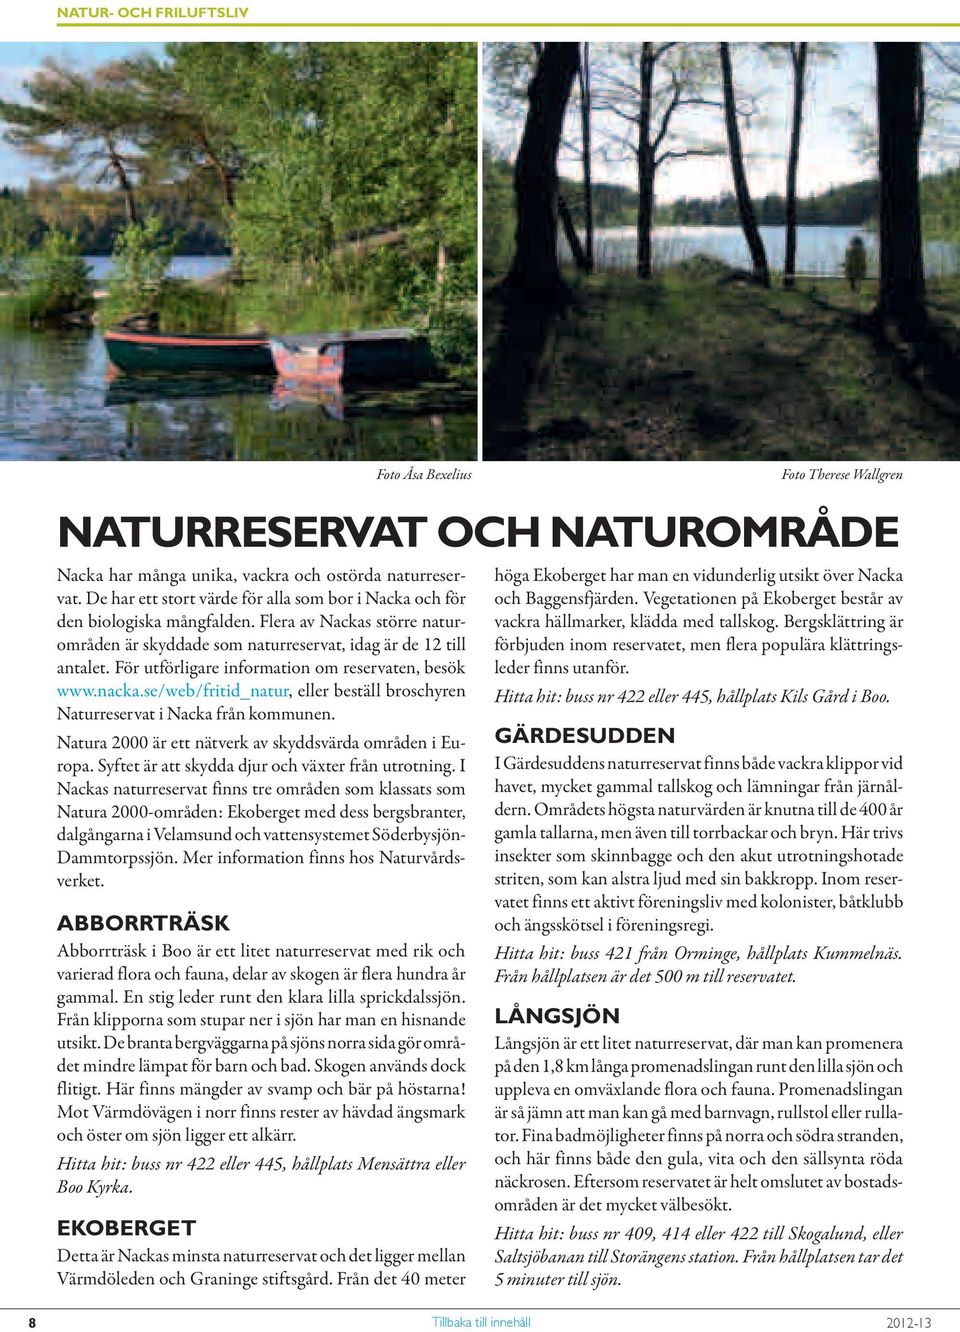 se/web/fritid_natur, eller beställ broschyren Naturreservat i Nacka från kommunen. Natura 2000 är ett nätverk av skyddsvärda områden i Europa. Syftet är att skydda djur och växter från utrotning.